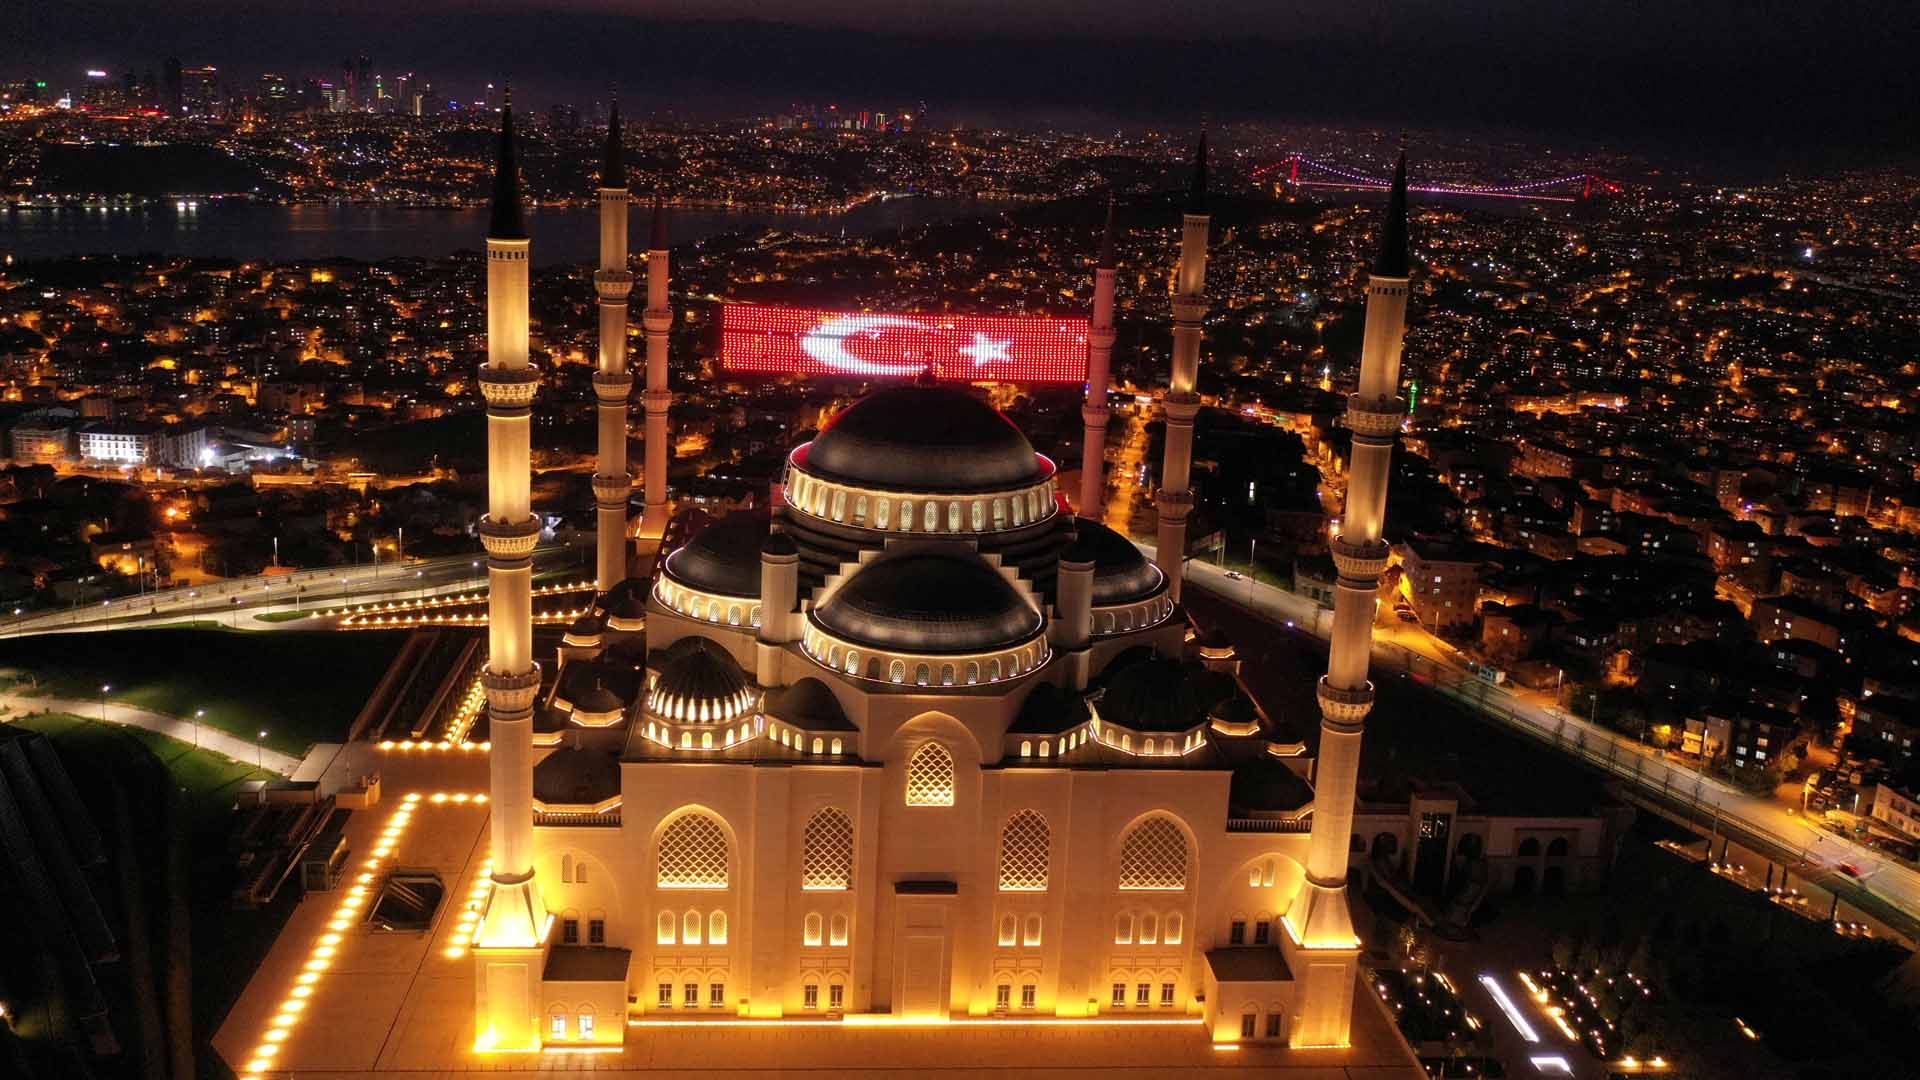 Hackean varias mezquitas turcas y suena 'Bella Ciao' en vez de la llamada al rezo